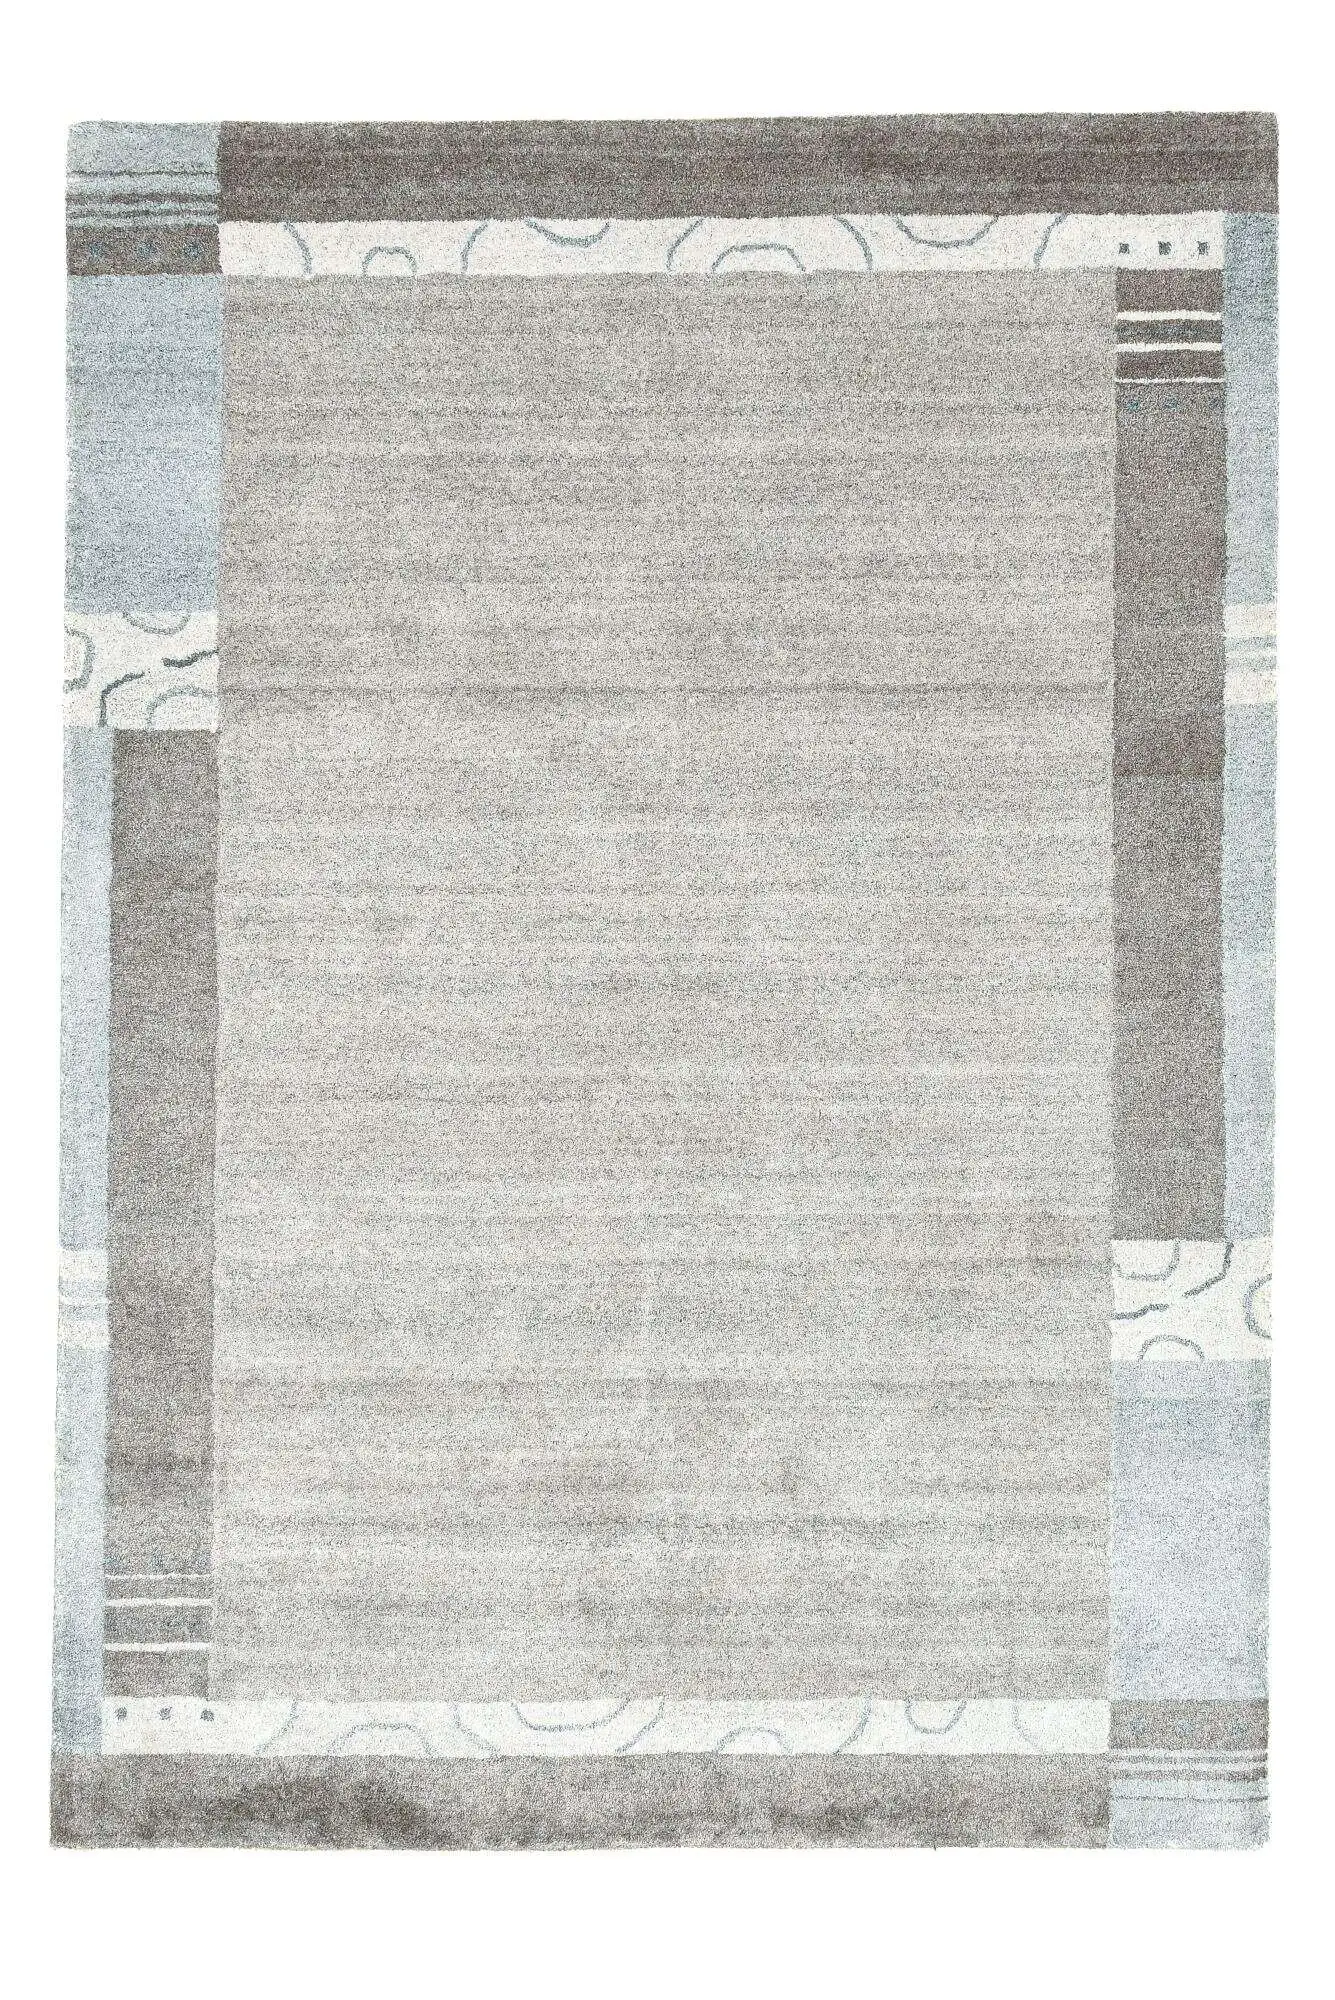 Design Teppich Bali Bamboo Silk 160x230cm Viskose beige grau Bordüre